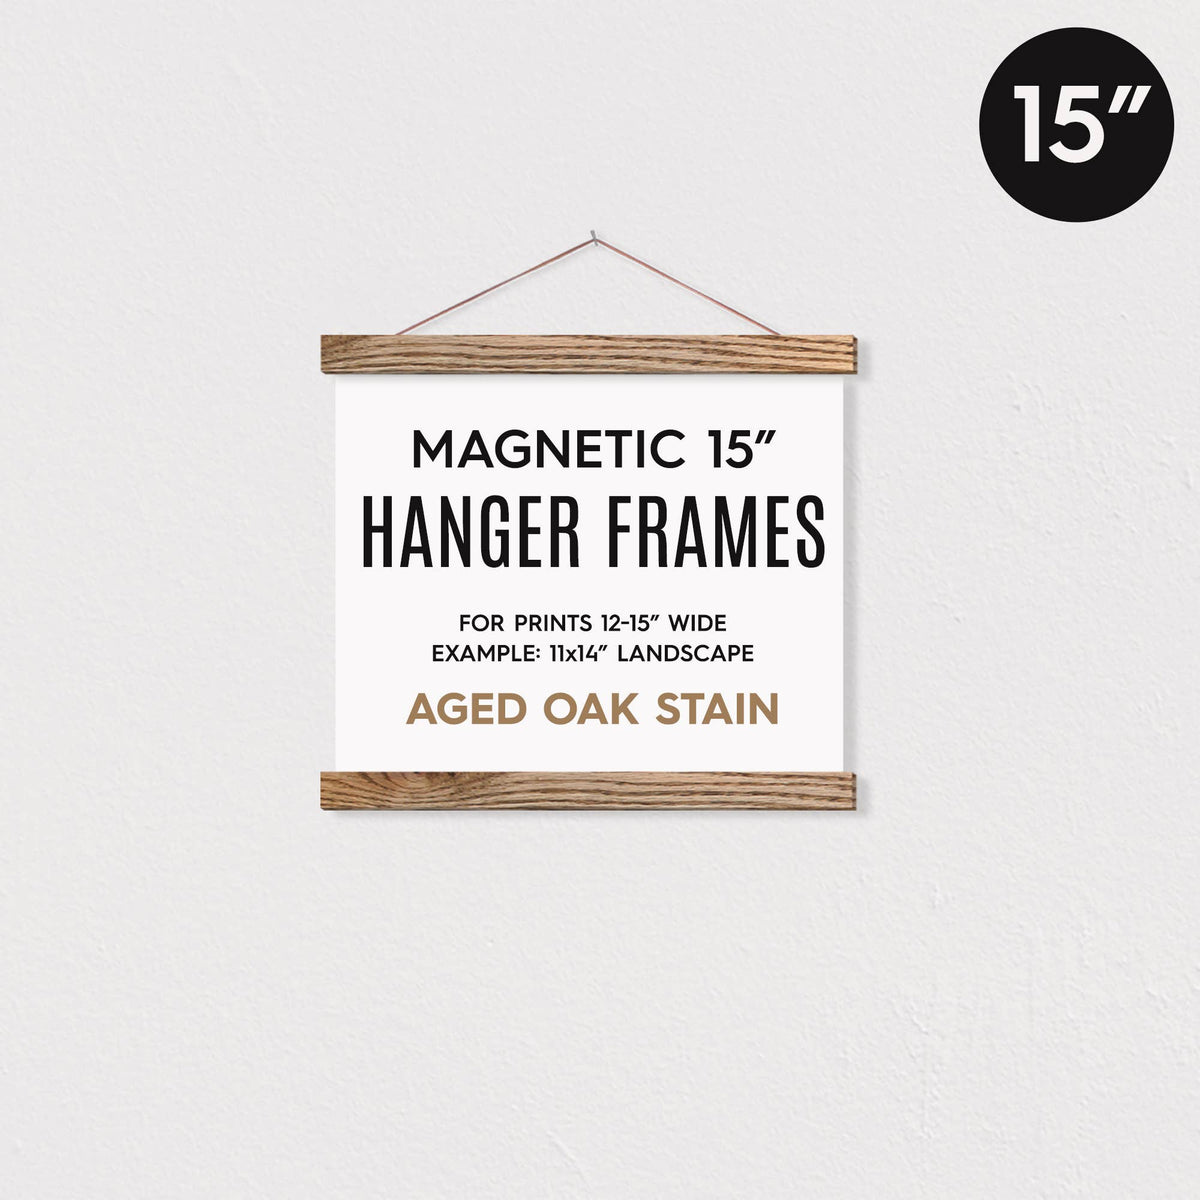 15" MAGNETIC Poster Hanger Frame for 11x14" Landscape